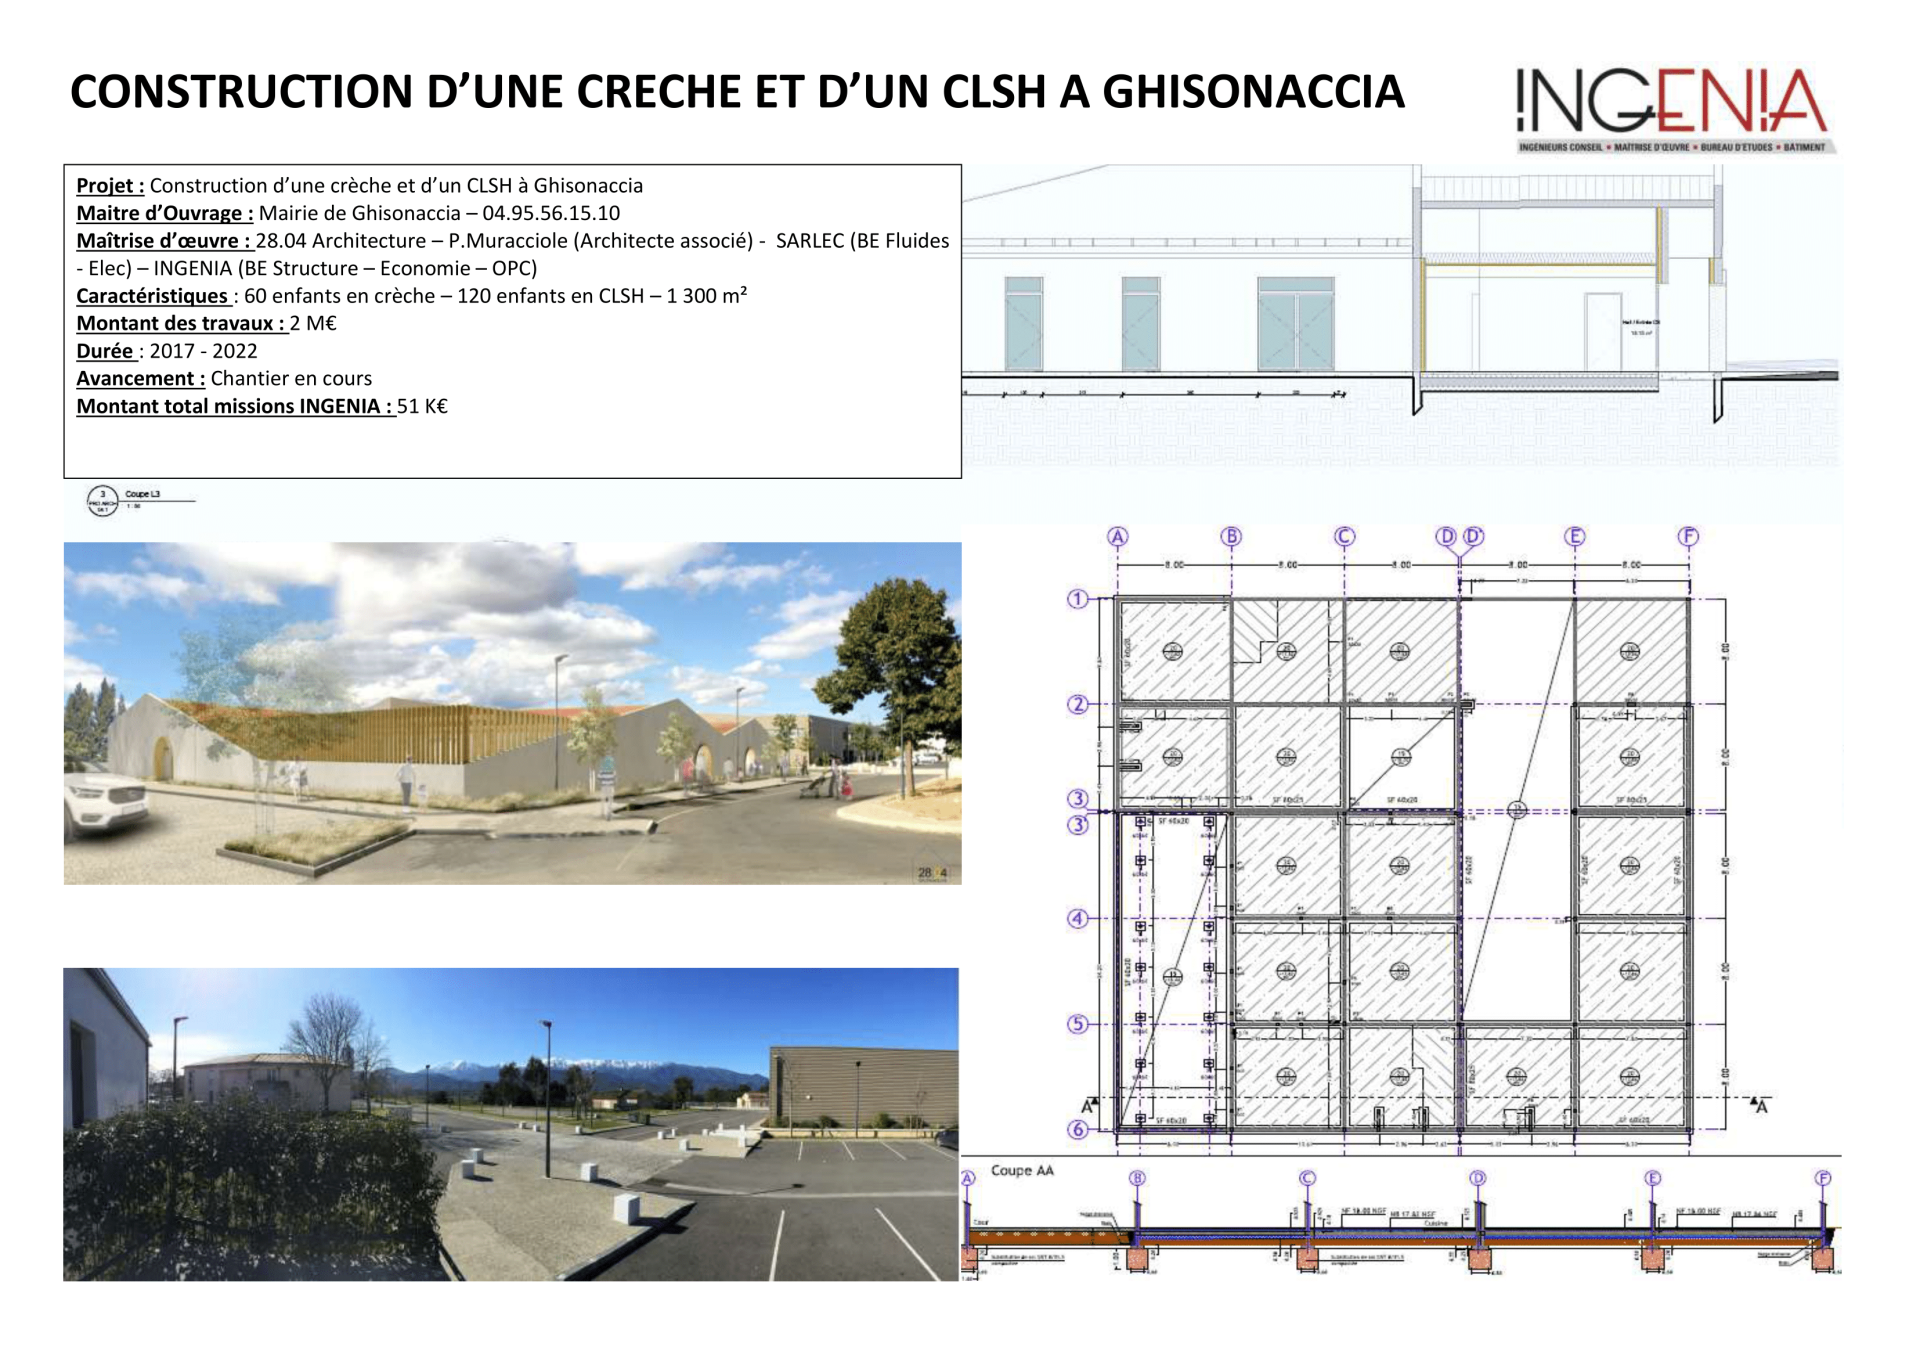 CONSTRUCTION DE LA CRECHE DE GHISONACCIA